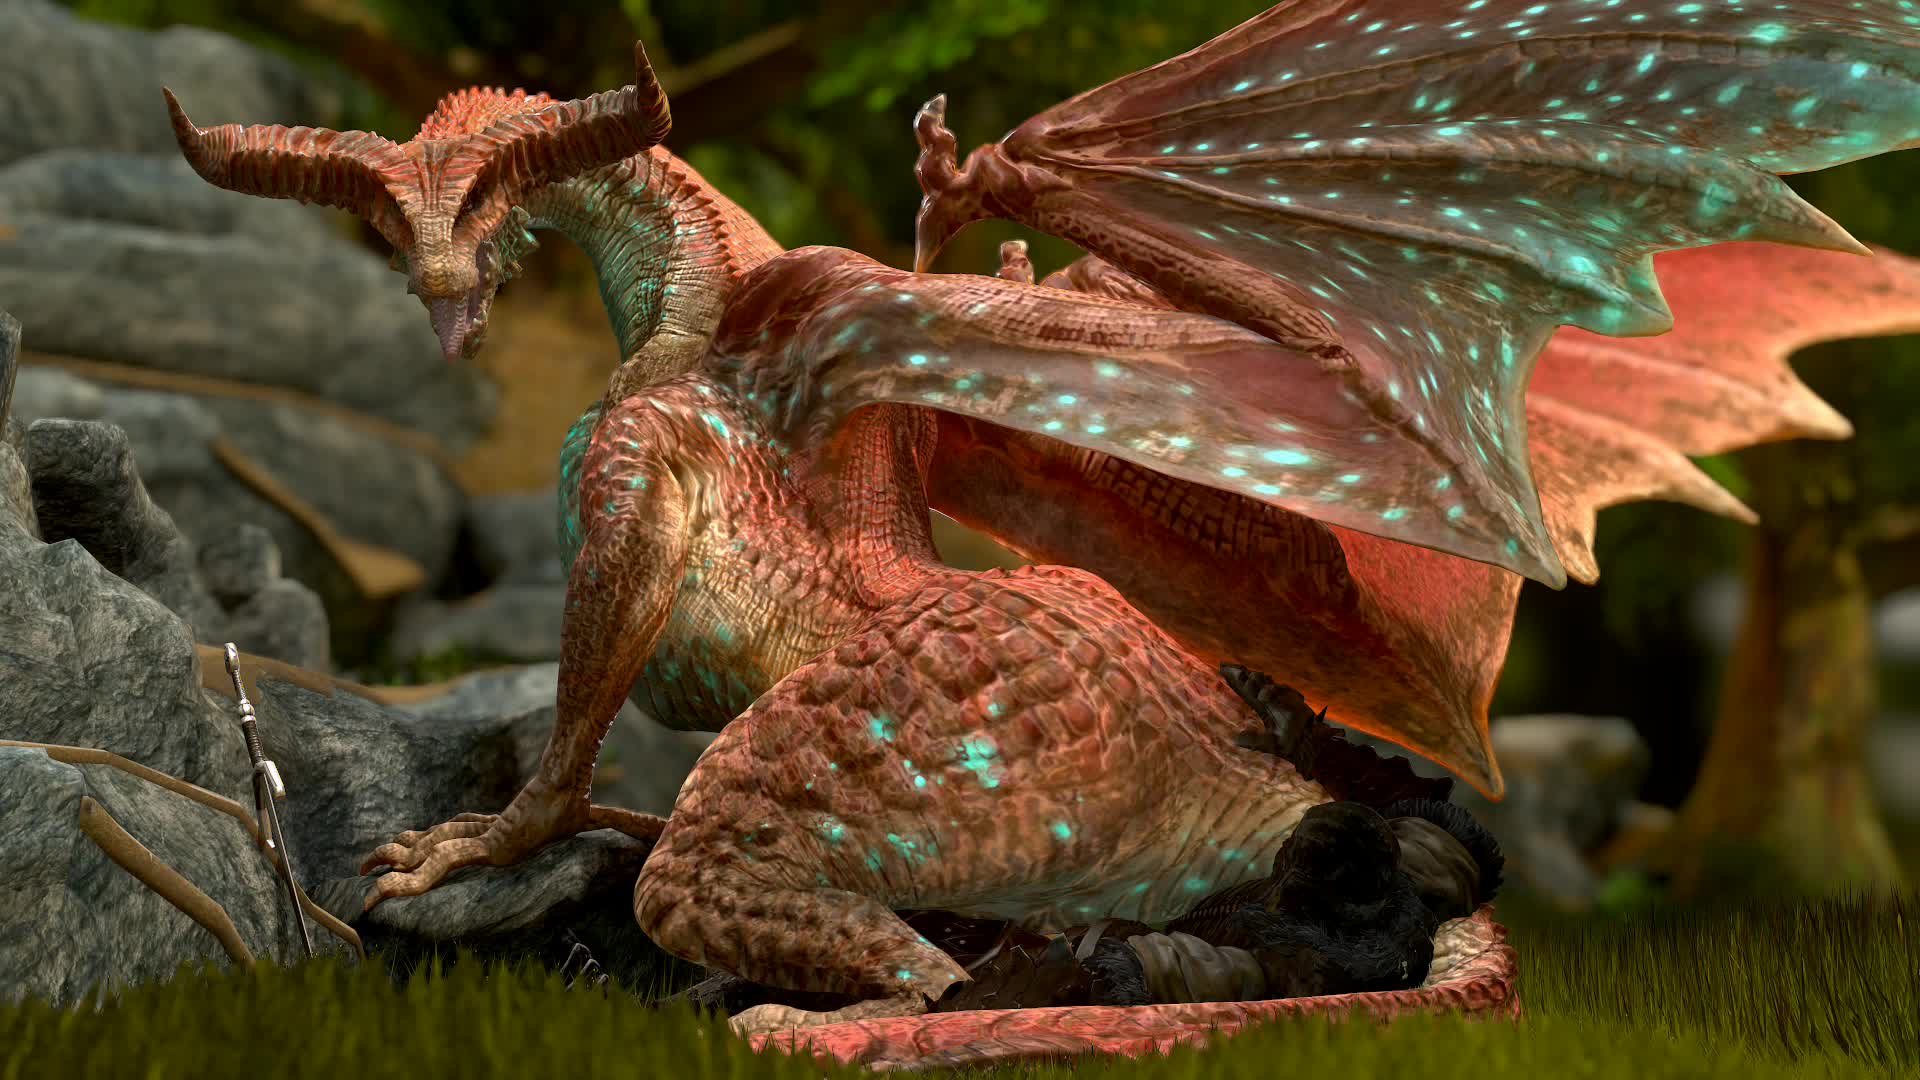 3D Animated Blender Dragon Mythology Wattchewant knight // 1920x1080 // 7.9MB // webm